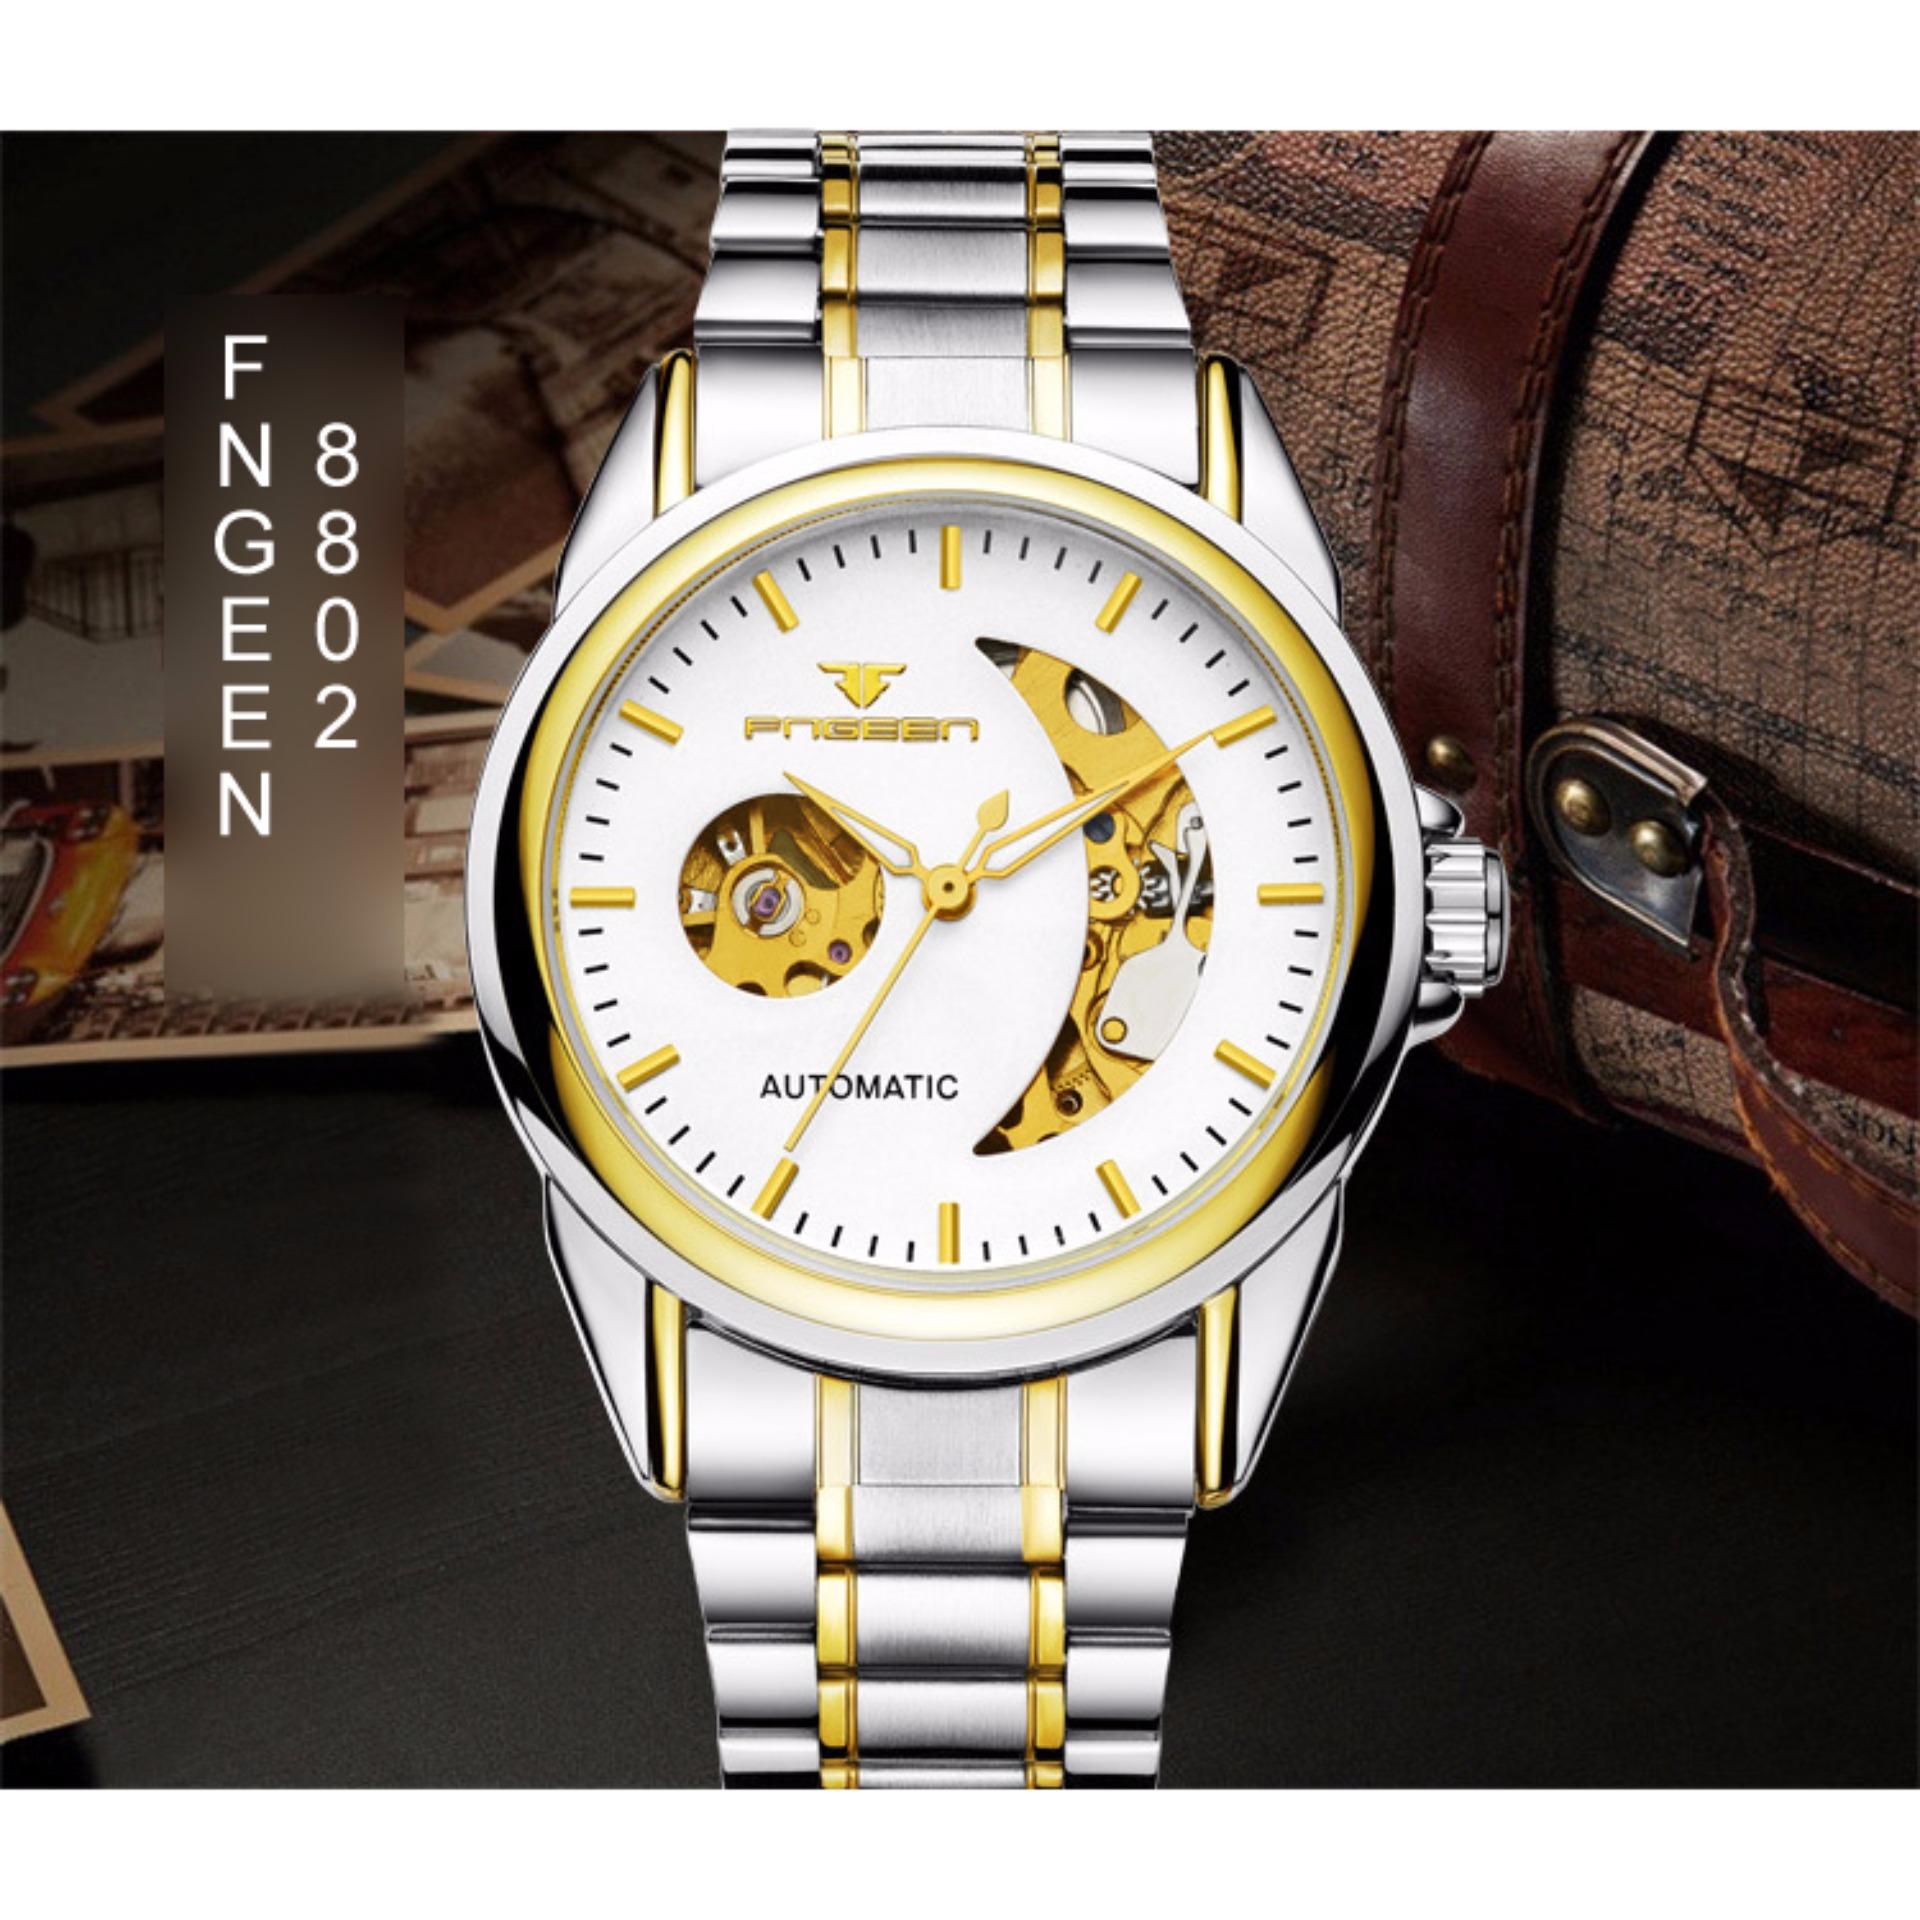 Đồng hồ đeo tay nam FNGEEN 8802 (mặt trắng)